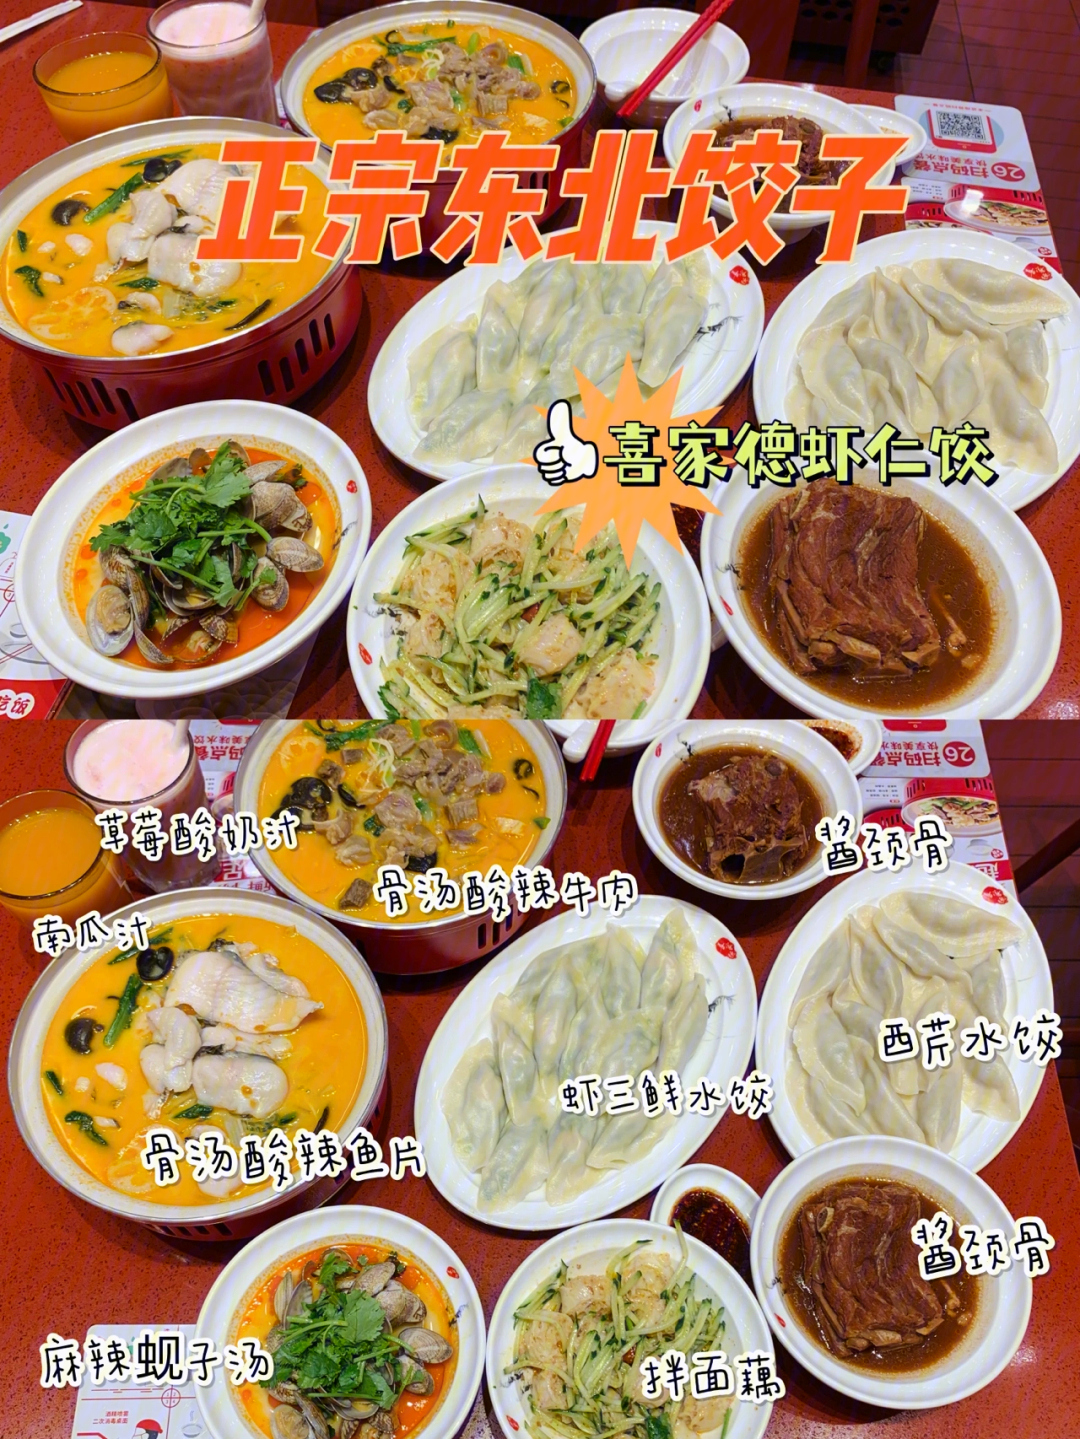 深圳超大虾仁水饺的喜家德带着烫菜炸场